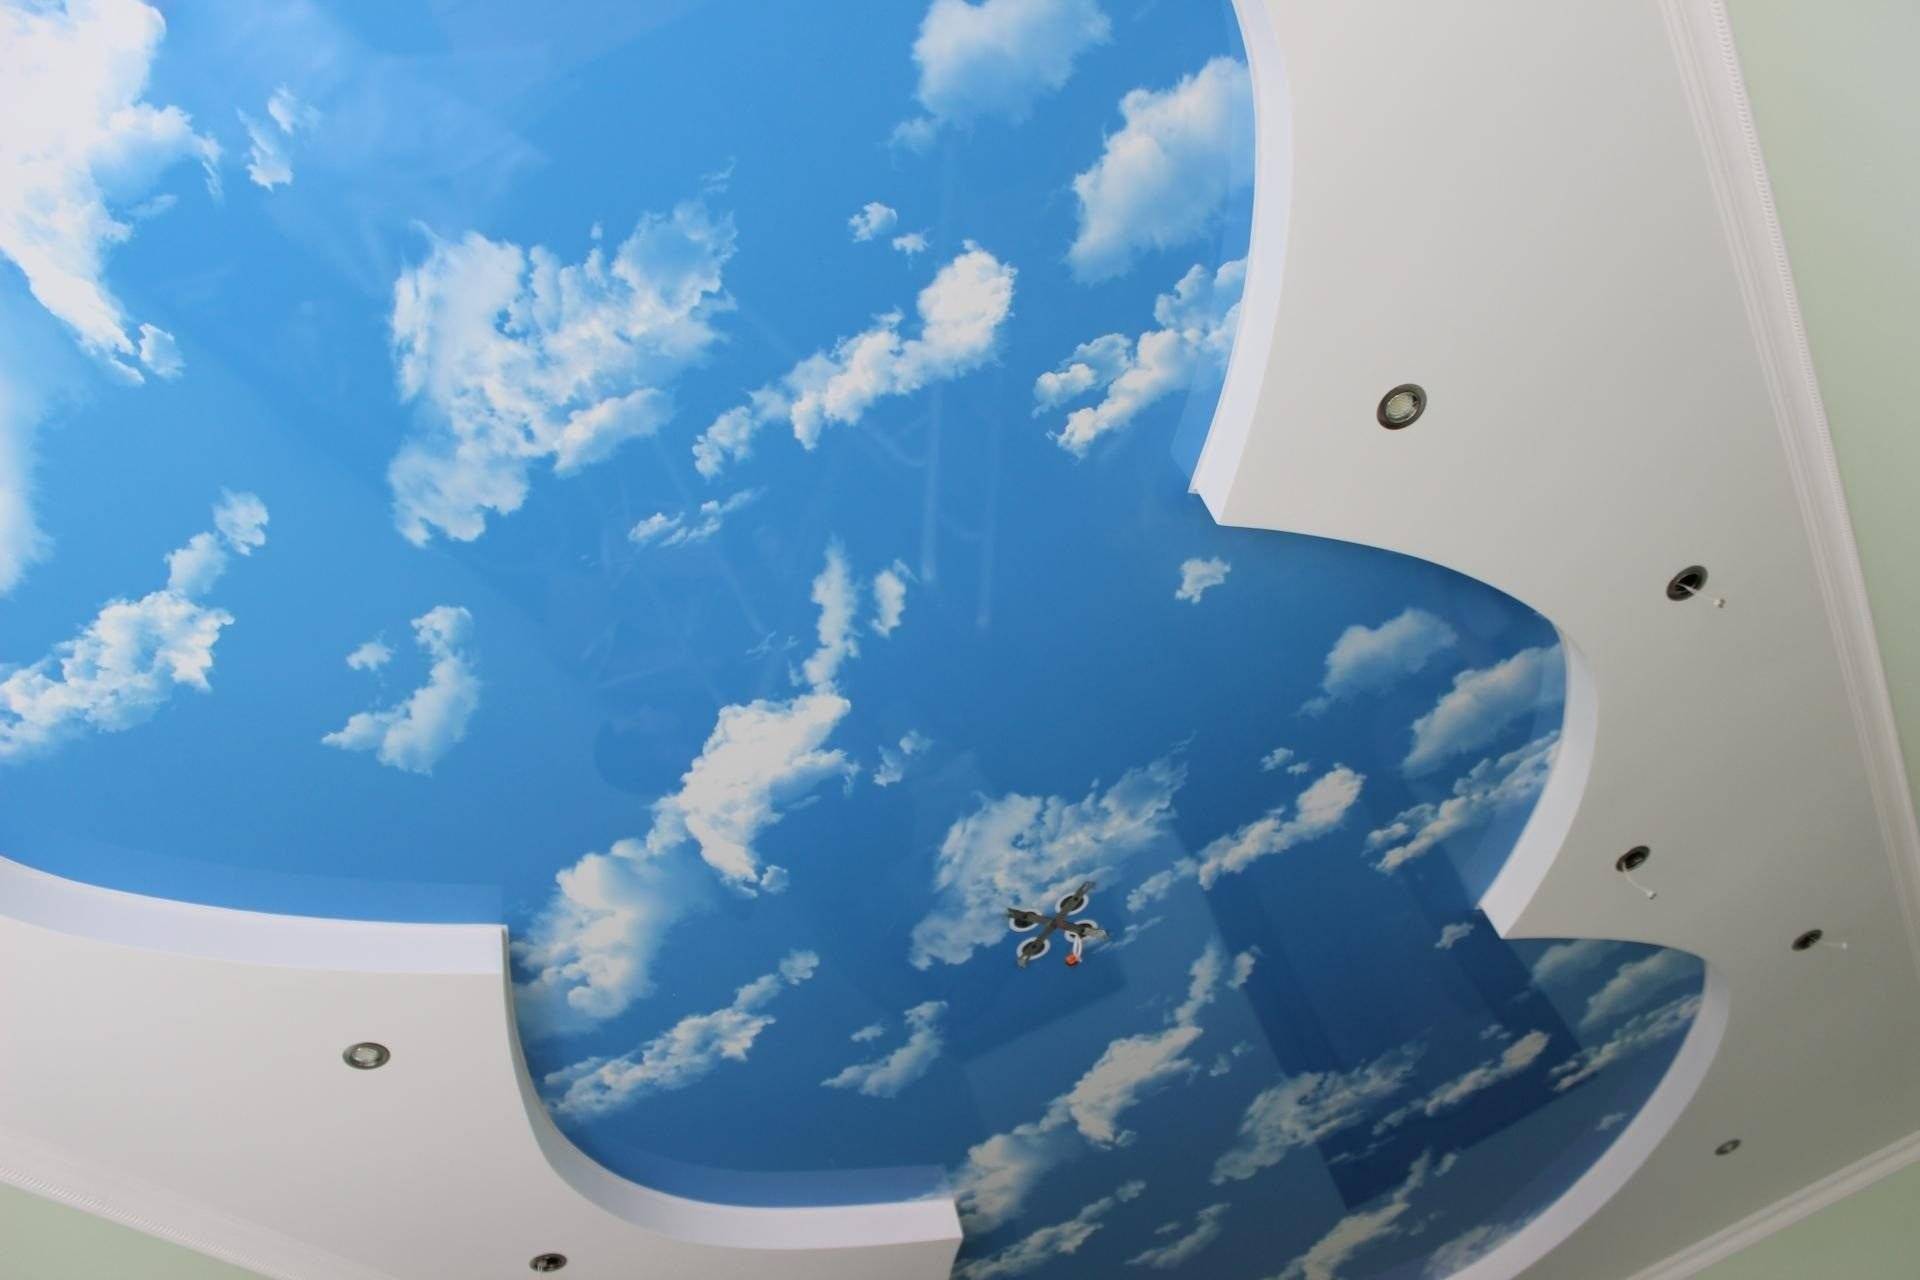 Натяжной потолок звездное небо с 3d эффектом своими руками: инструкция, фото и видео